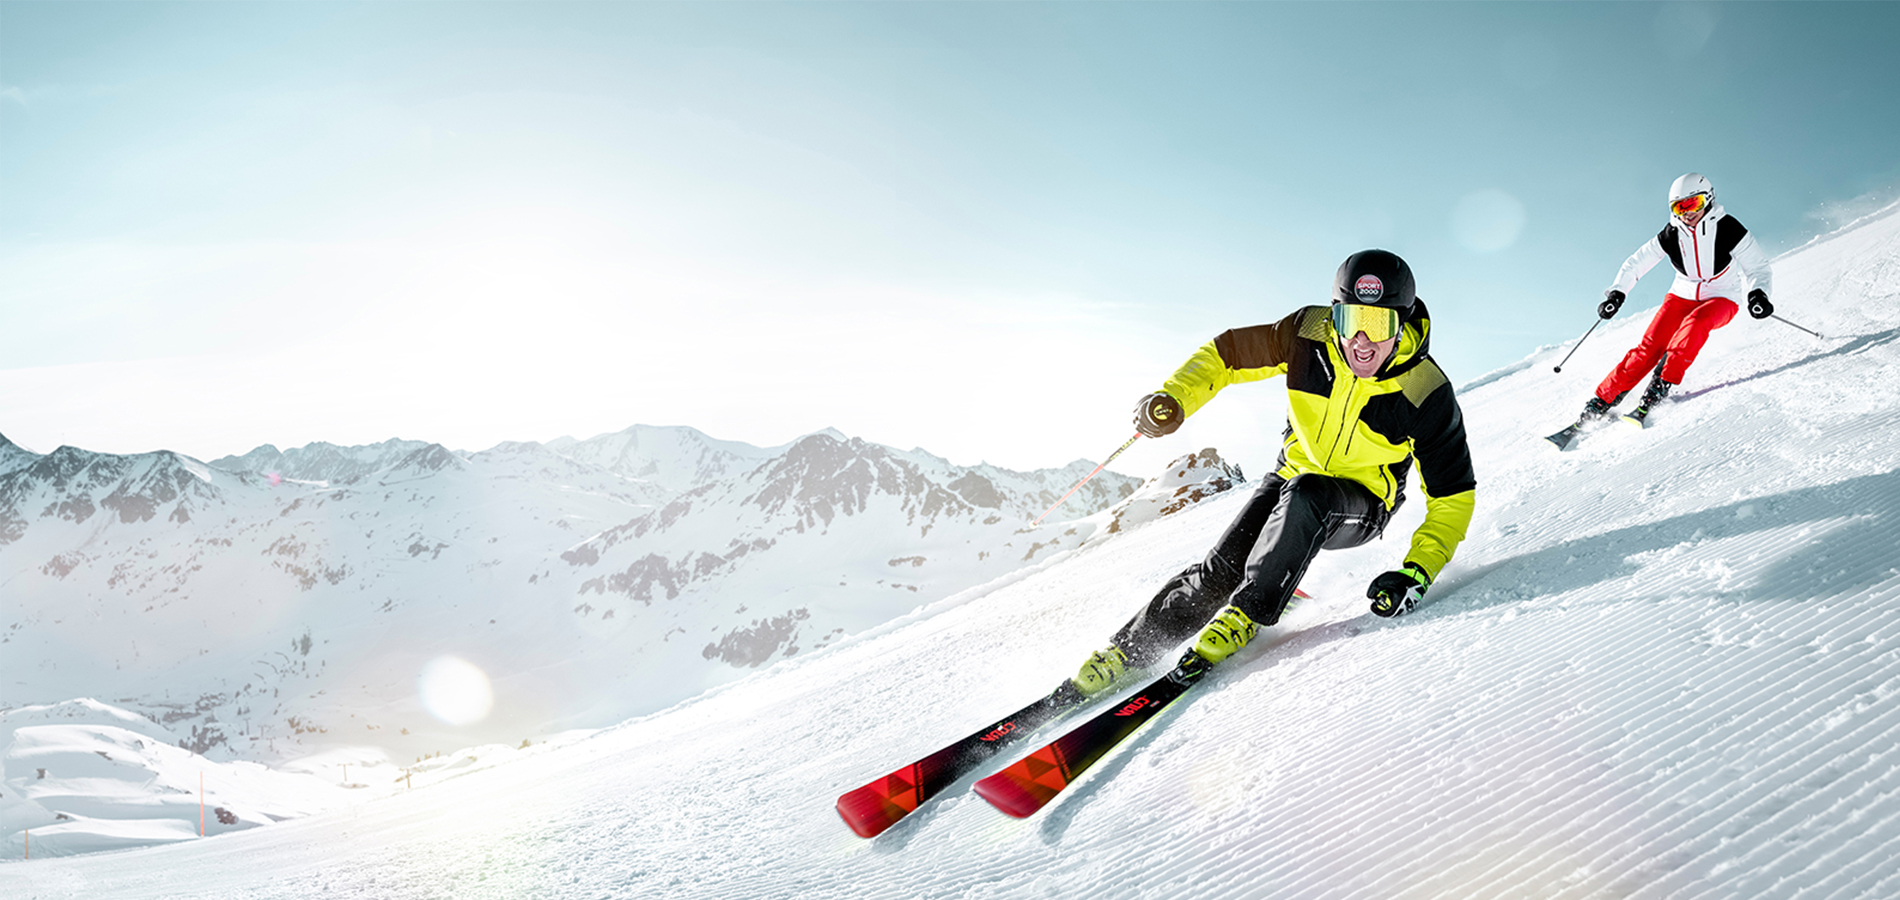 rand tweeling landheer Je skitechniek verbeteren? | SPORT 2000 rent Blog